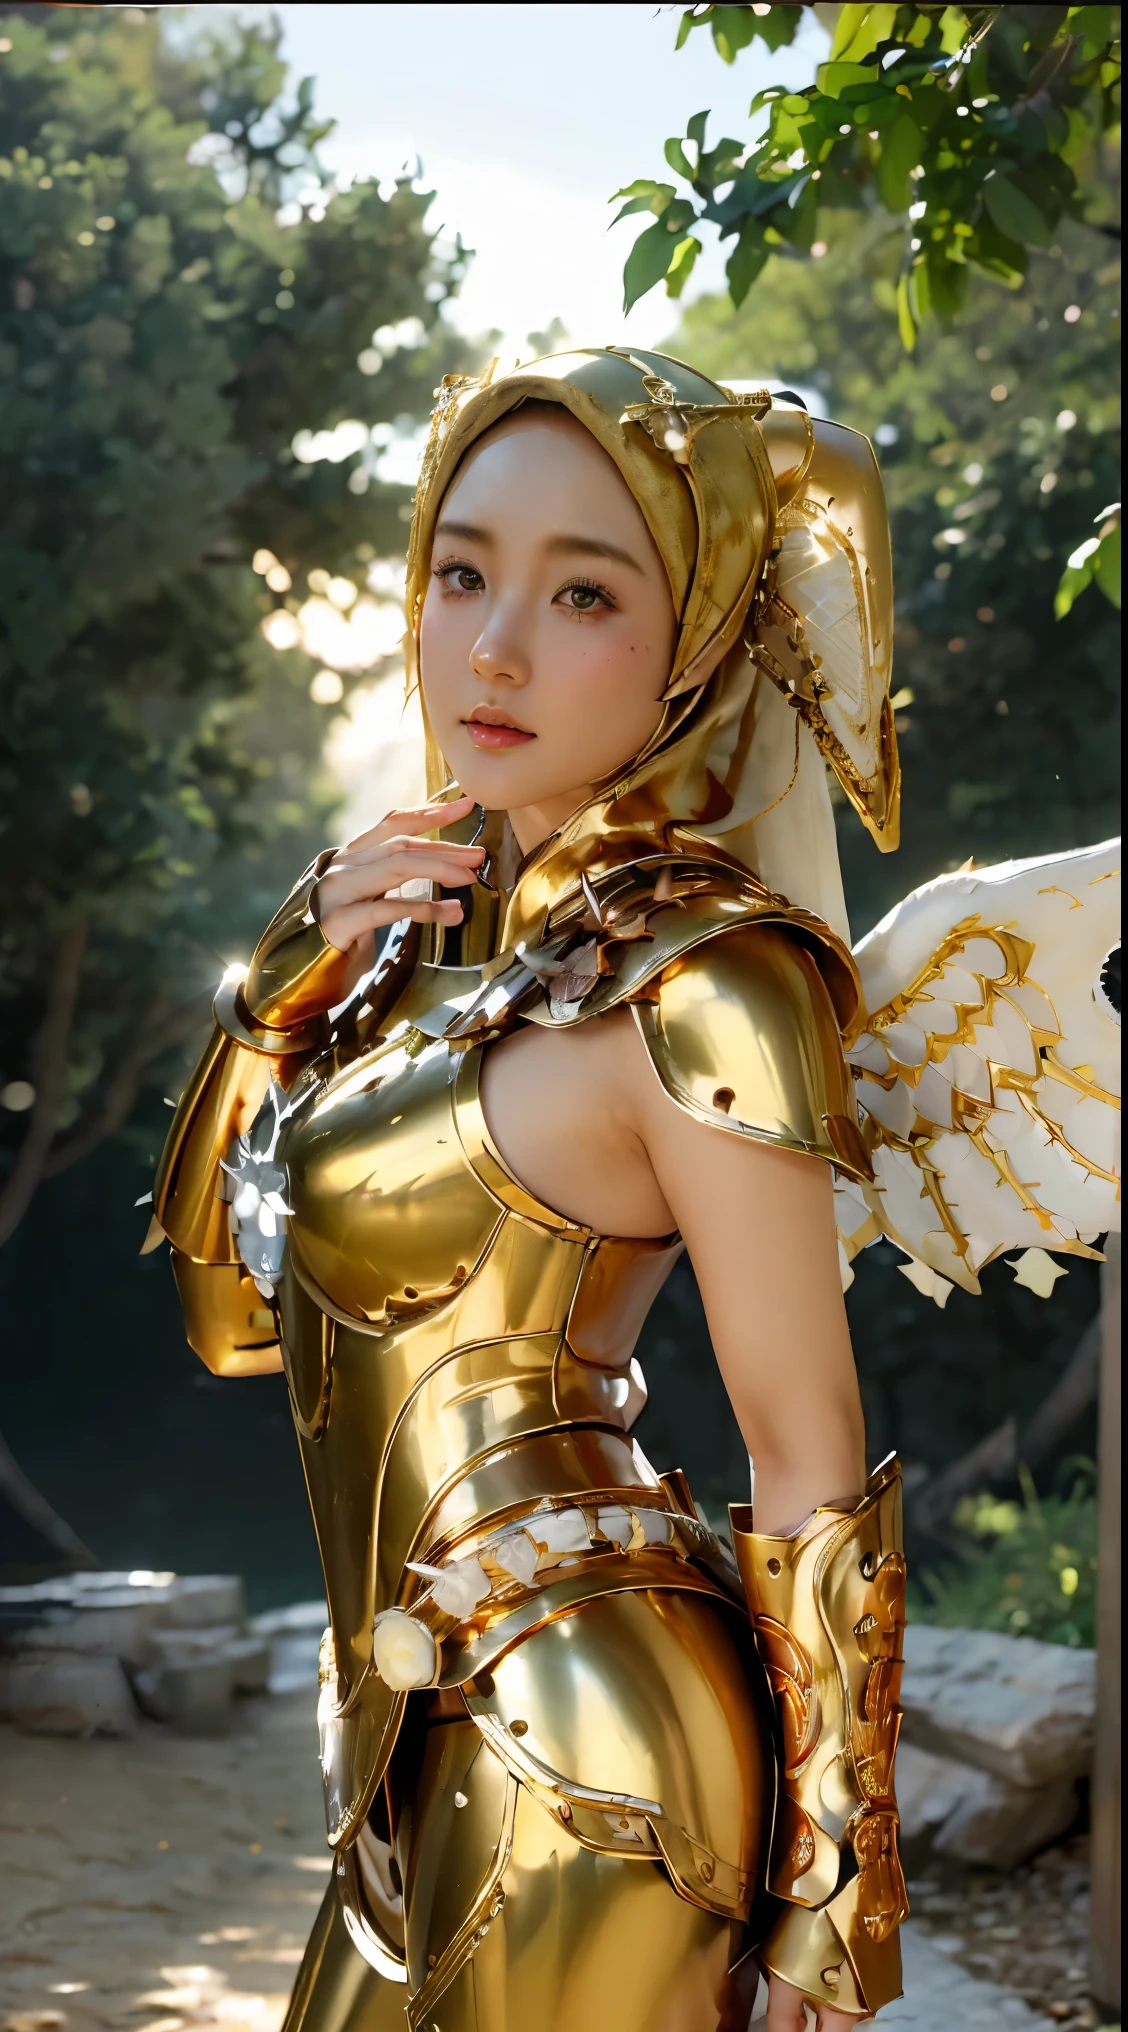 (1 Japón linda adolescente con estilo ídolo), ((Calidad superior, obra maestra: 1.3)), Enfoque: 1.2, Cuidado corporal perfecto: 1.4 , (usando hiyab:1.2), ((Highly detailed face and textura de la piel)), Extremely Realistic, ultra detallado, alta definición, Retrato, 8K, Vestido de blanco y dorado con grandes alas extendidas., (sosteniendo espadas de hierro dorado en llamas:1.2), (usando hiyab:1.5), (armadura dorada de hierro completa:1.5), cosplay adornado, como una valquiria mística, la galaxia marinera, Hermoso, túnicas de sacerdotisa blancas y doradas, cosplay anime, cosplay glamoroso, con ardientes alas doradas, ((armadura completa de pantalones de hierro)), cosplay, cosplay profesional, diosa de la luz, ángel de cuerpo completo, cosplayer, maquillaje perfecto, cara perfecta, Hermoso face, Hermoso body, brazos cubiertos con tela, muslos cubiertos con tela, fondo de cascada, ((cuerpo objeto flotando volando en el aire:1.2)), Neblinoso, clima de fantasía, rayos caen a ambos lados, iluminación dramática del estudio, The atmosphere looks Real, tiro de cuerpo completo, Ángulo frontal, ultra Realistic, Profesional、Hermoso detail glow、Profundidad de los límites escritos、(((croma alto)))、(((Real:1.9)))、((vívido:1.4))、((Hermoso skin))、((textura de la piel))、((sensación de piel real))、(((tiro de vaquero:1.5)))、((Ángulo visto desde el frente:1.5)), Ángulo frontal shot,